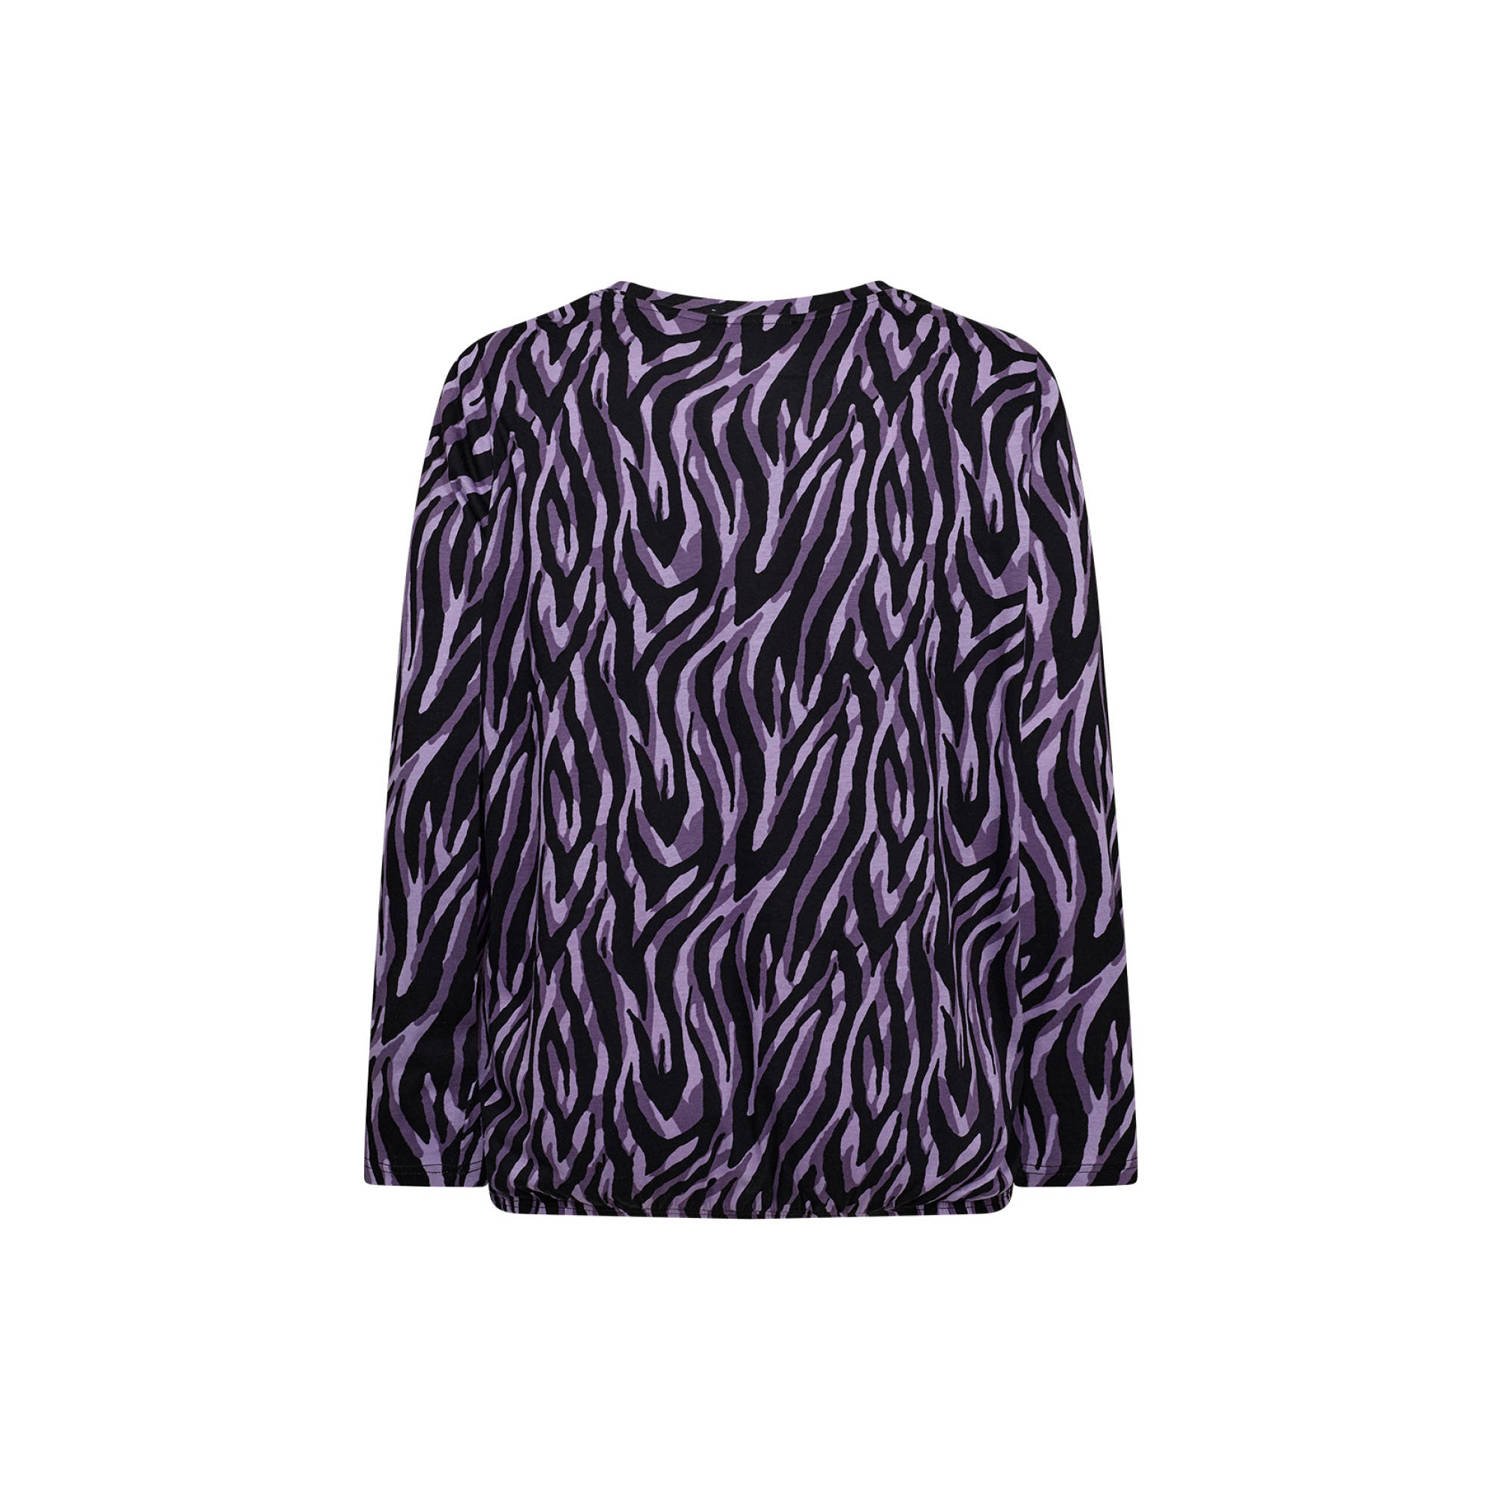 Wasabiconcept blousetop met zebraprint paars zwart